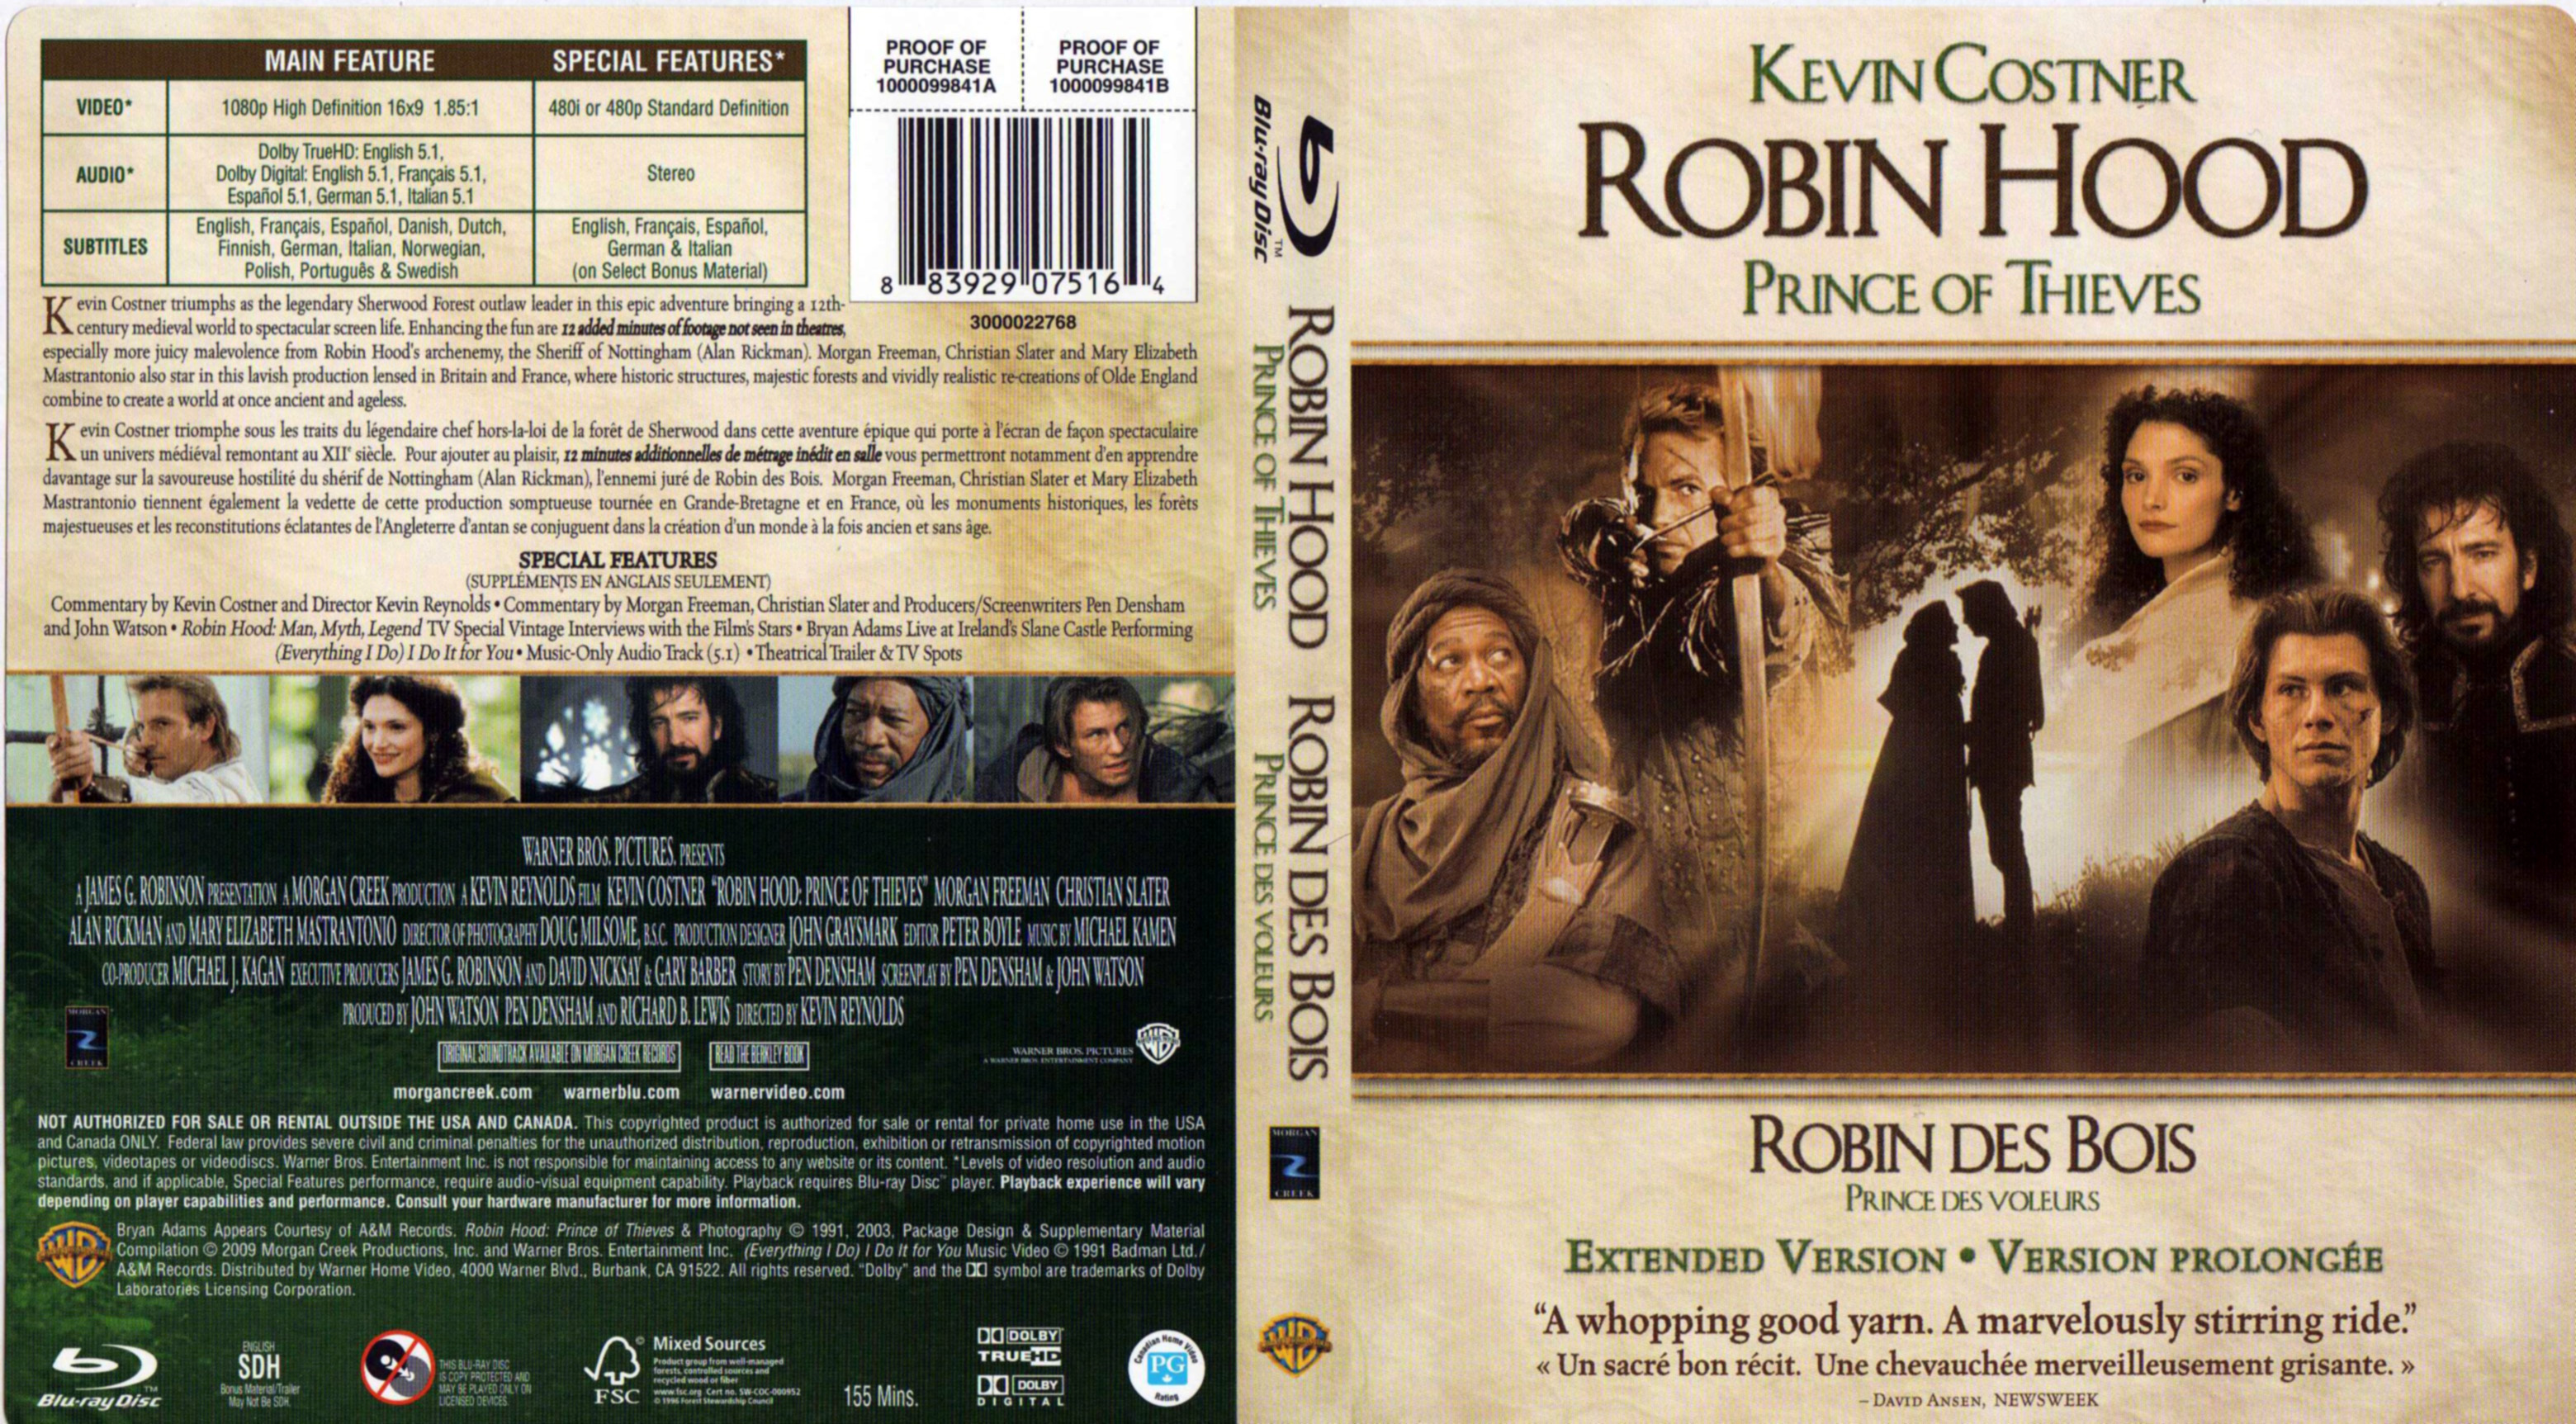 Jaquette DVD Robin des bois prince des voleurs (BLU-RAY) (Canadienne)